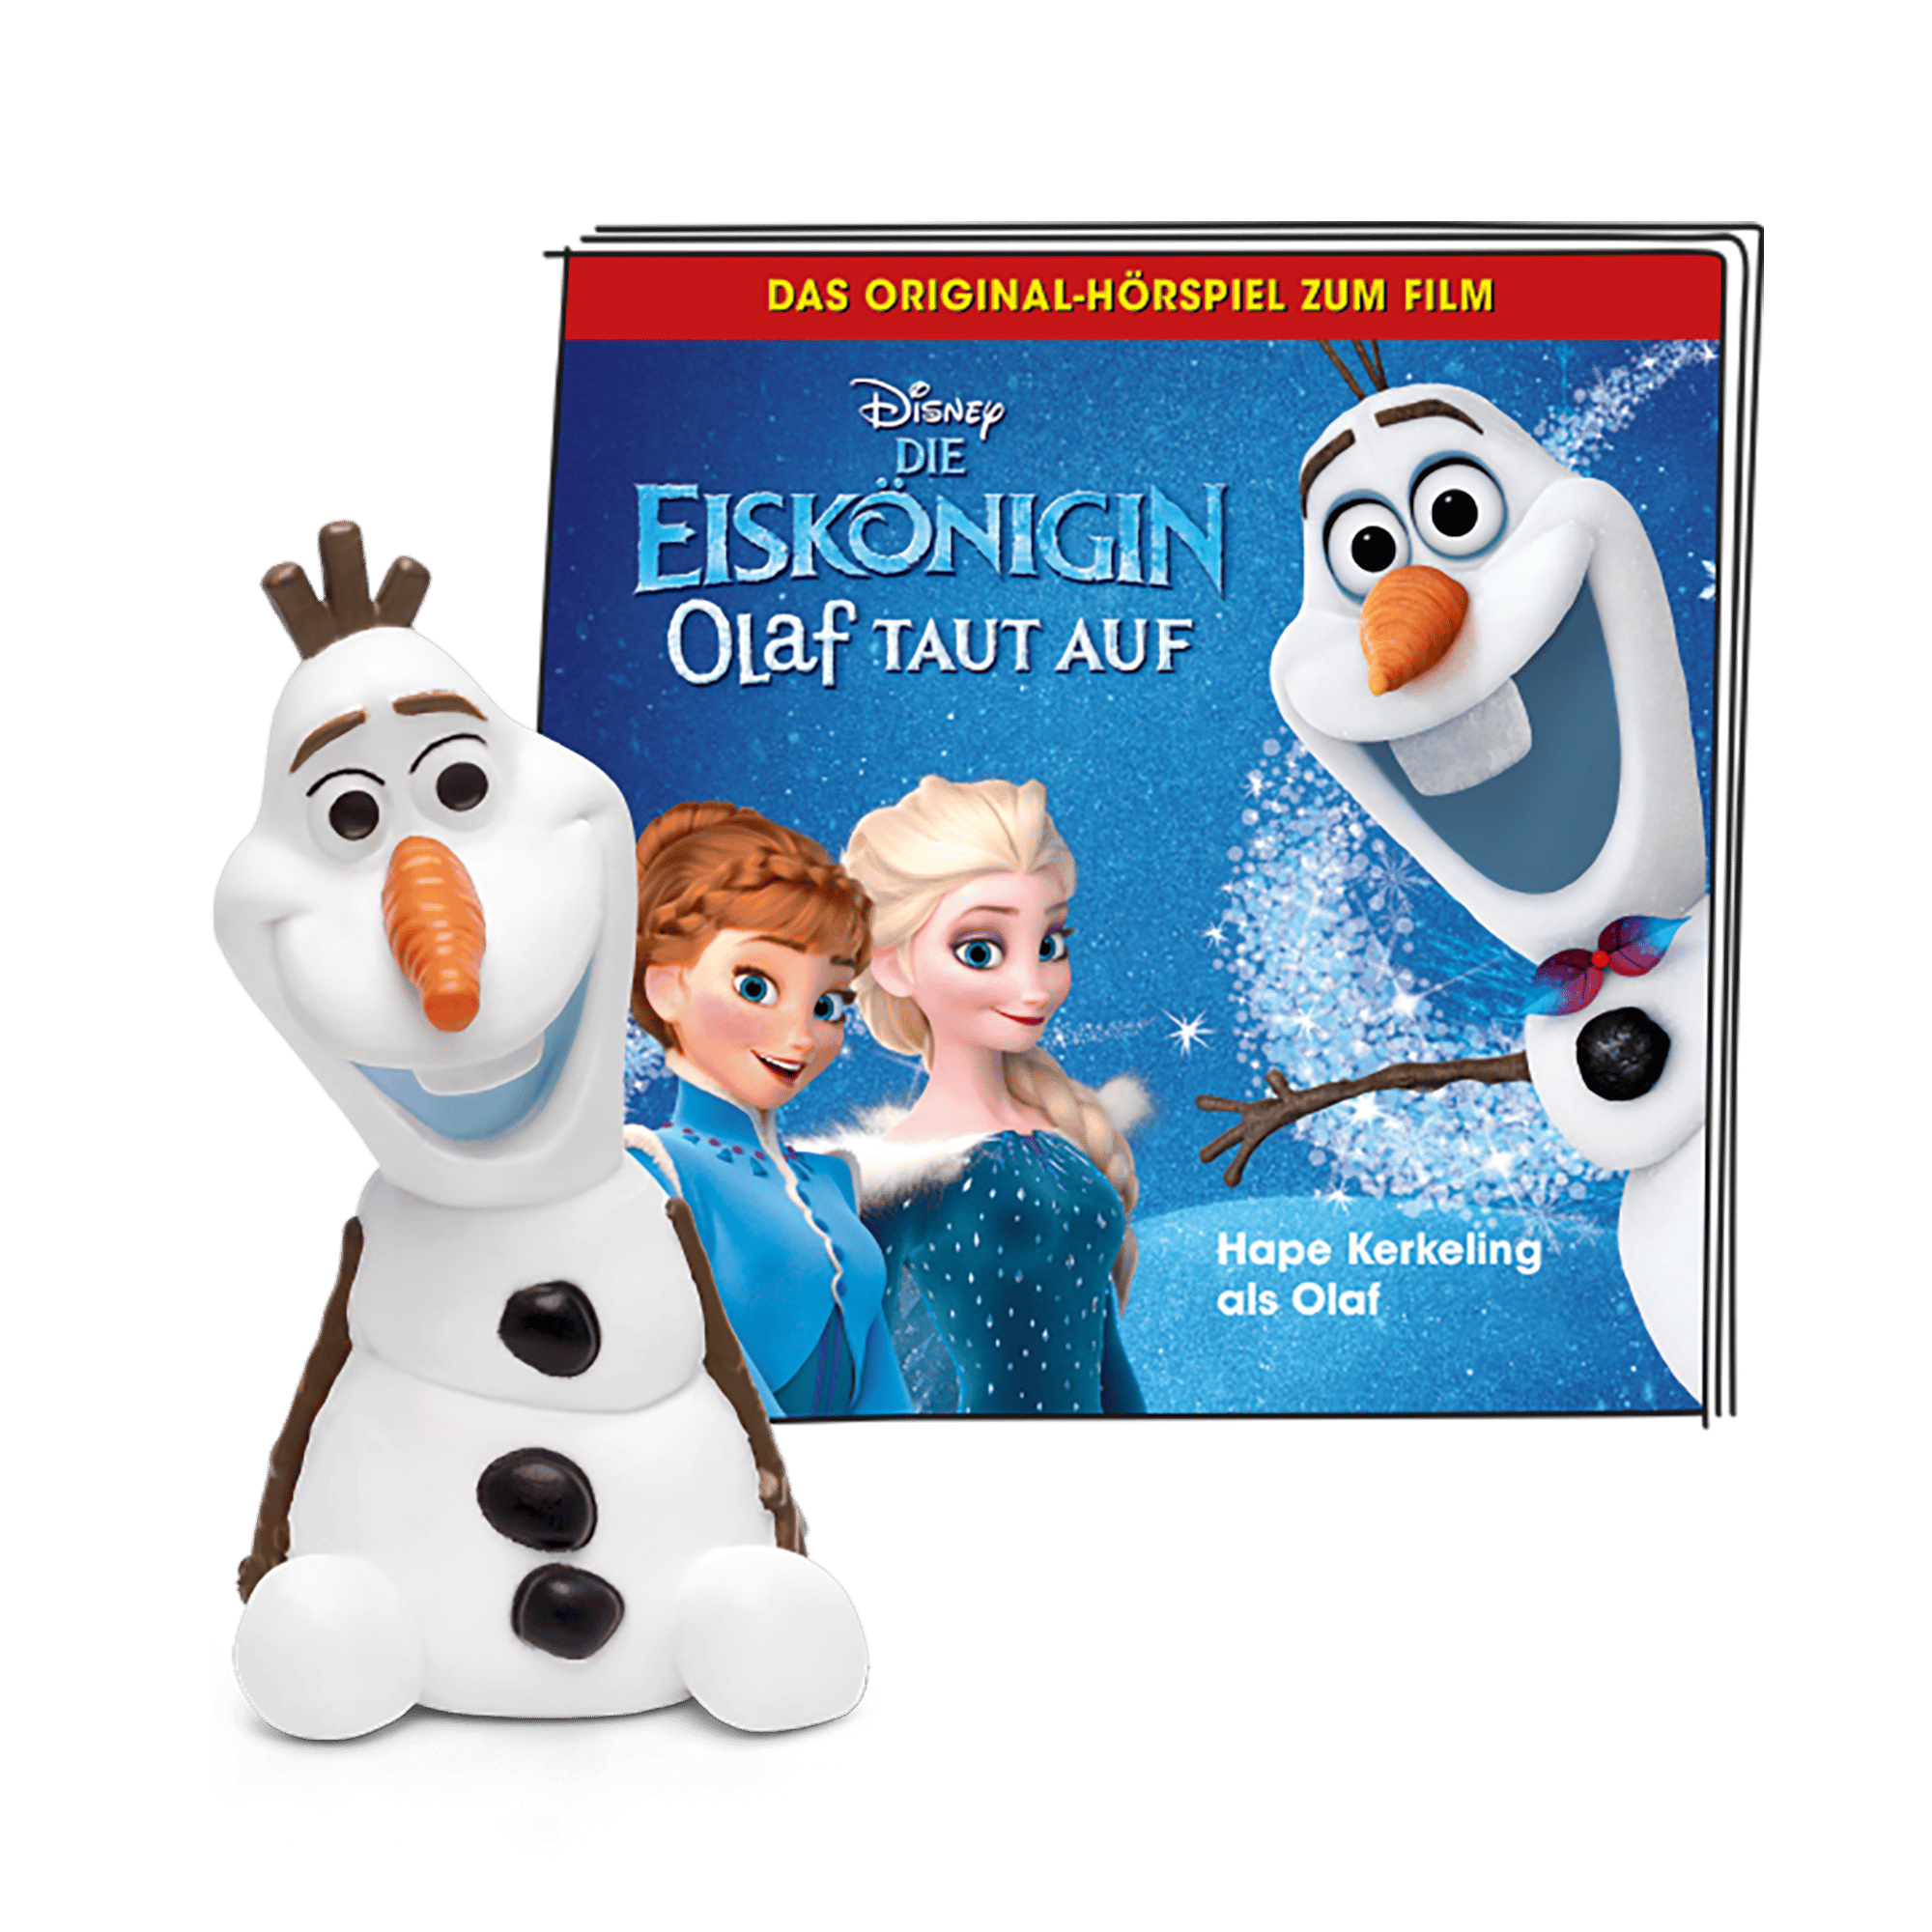 Disney Die Eiskönigin - Olaf taut auf tonies 2000583530008 1